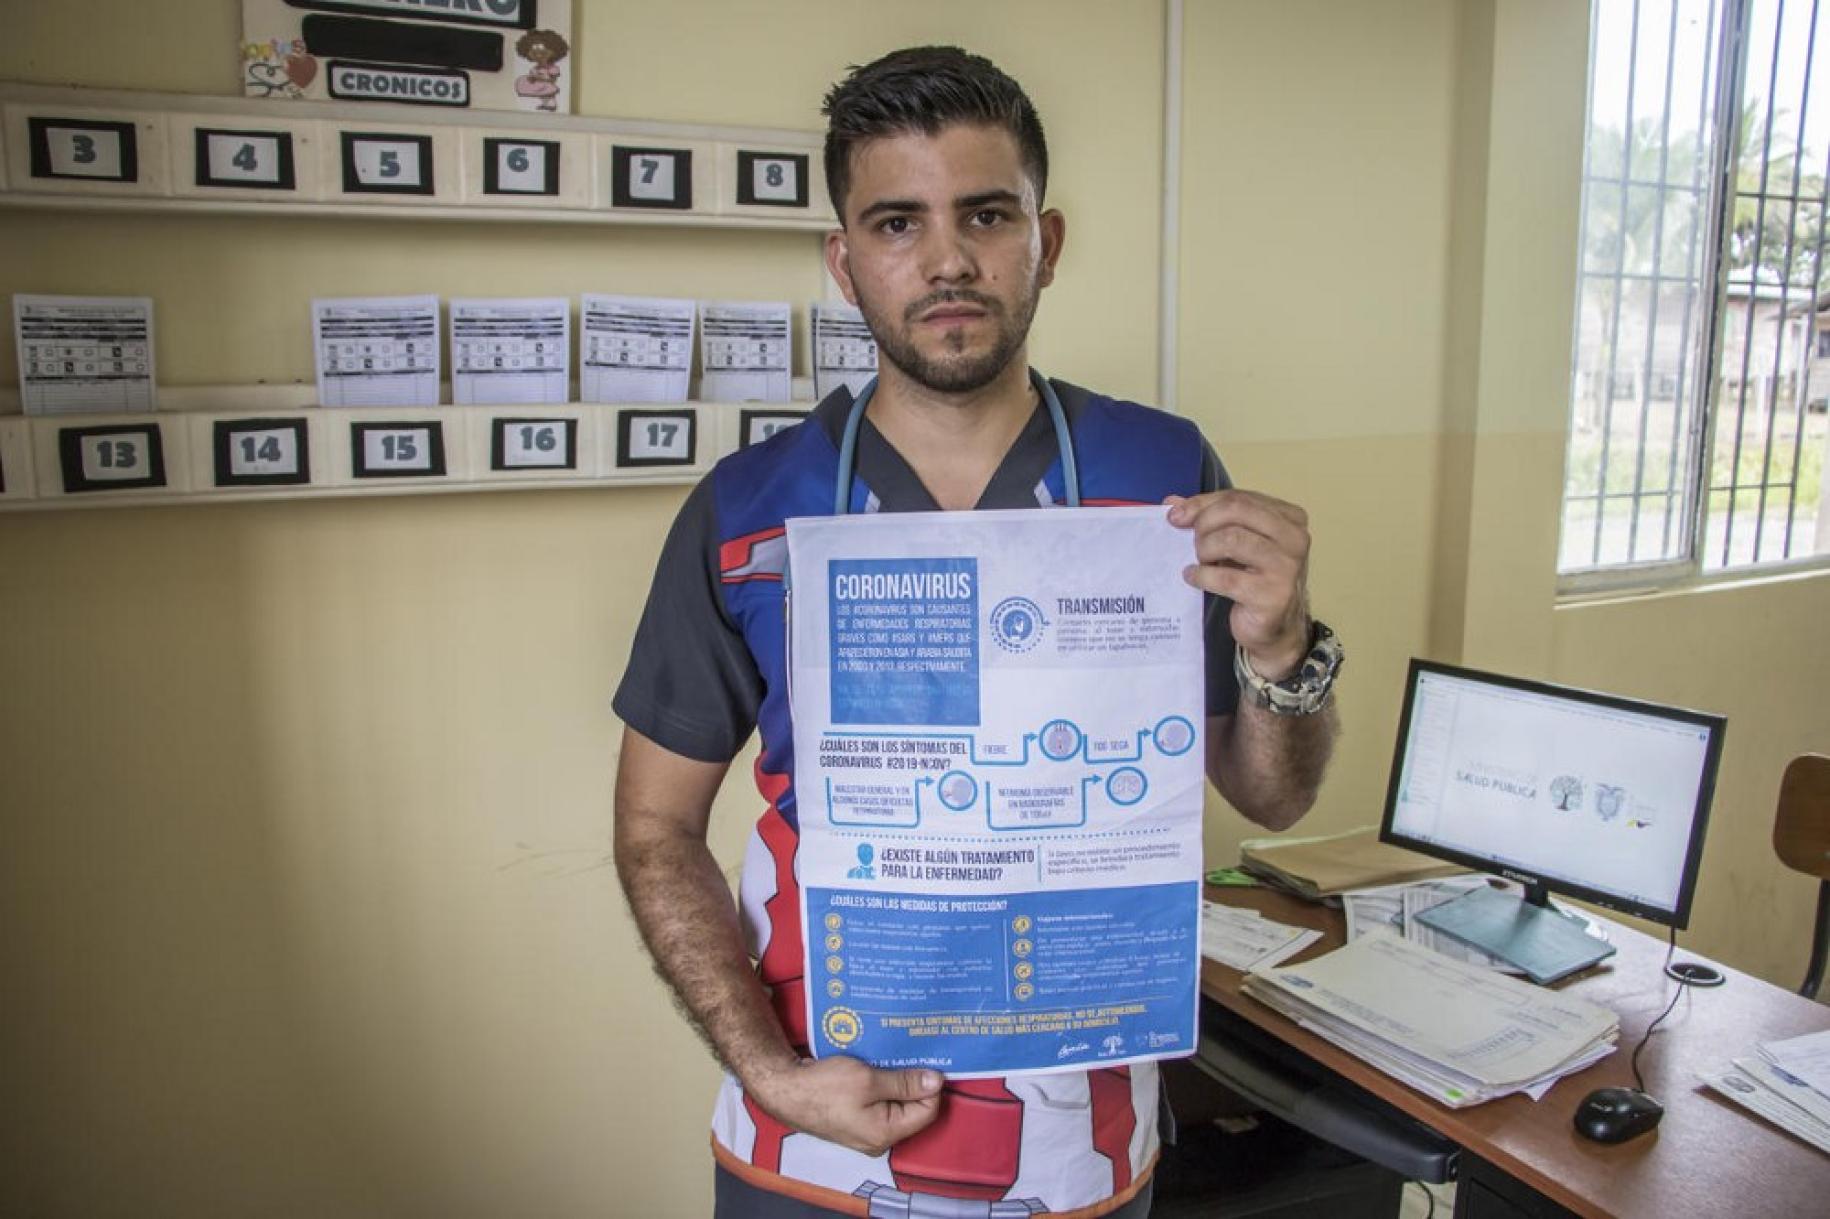 قام الطبيب الفنزويلي ، صمويل سواريز ، بتثقيف السكان المحليين واللاجئين الآخرين حول كوفيد-19 في الإكوادور ، البلد الذي استضافه.